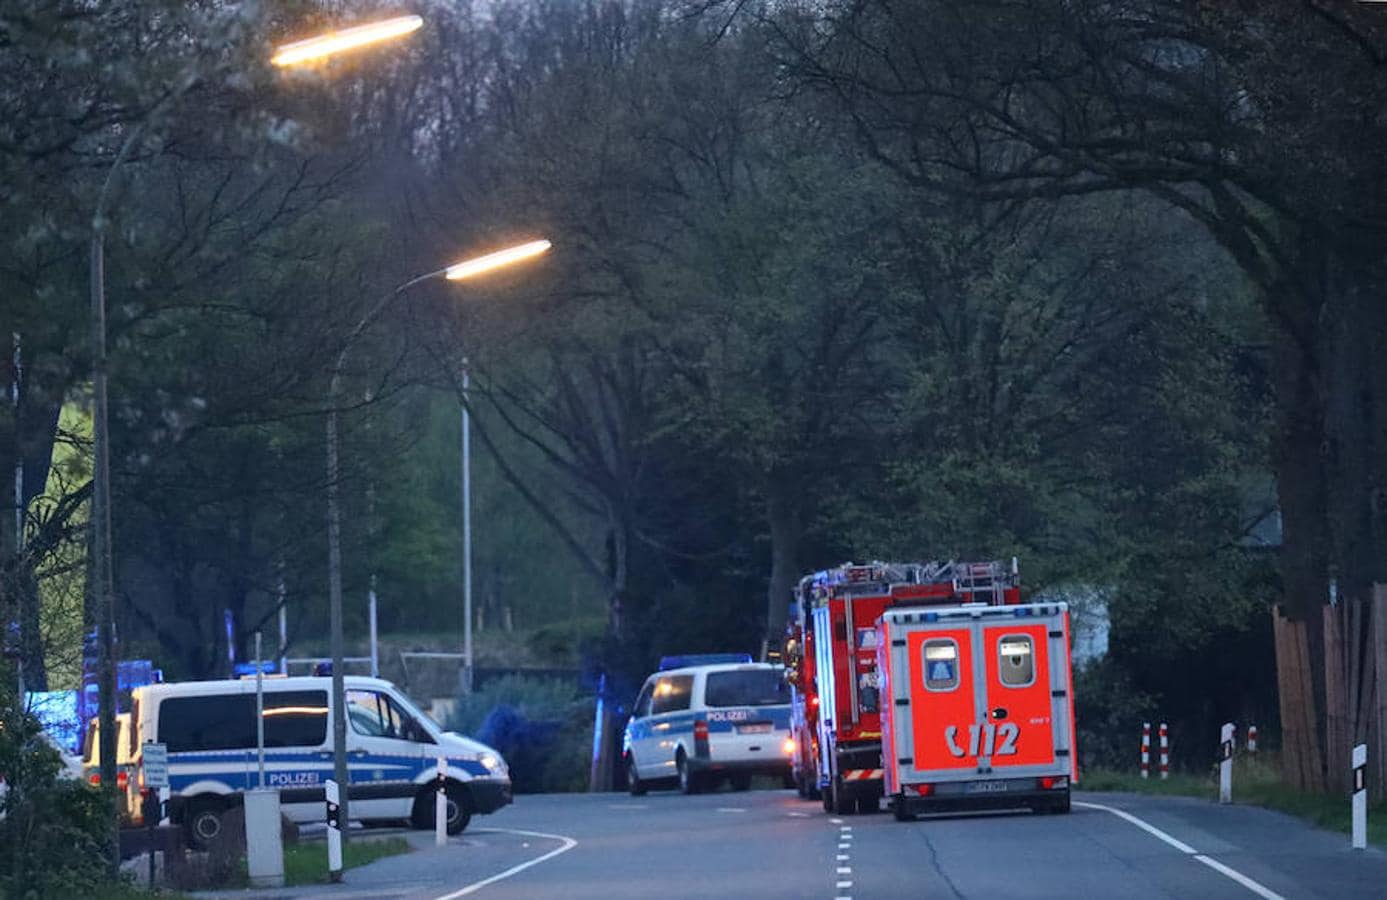 En torno a las 20.00 horas una explosión junto al autobús del Borussia de Dortmund generó mucha confusión